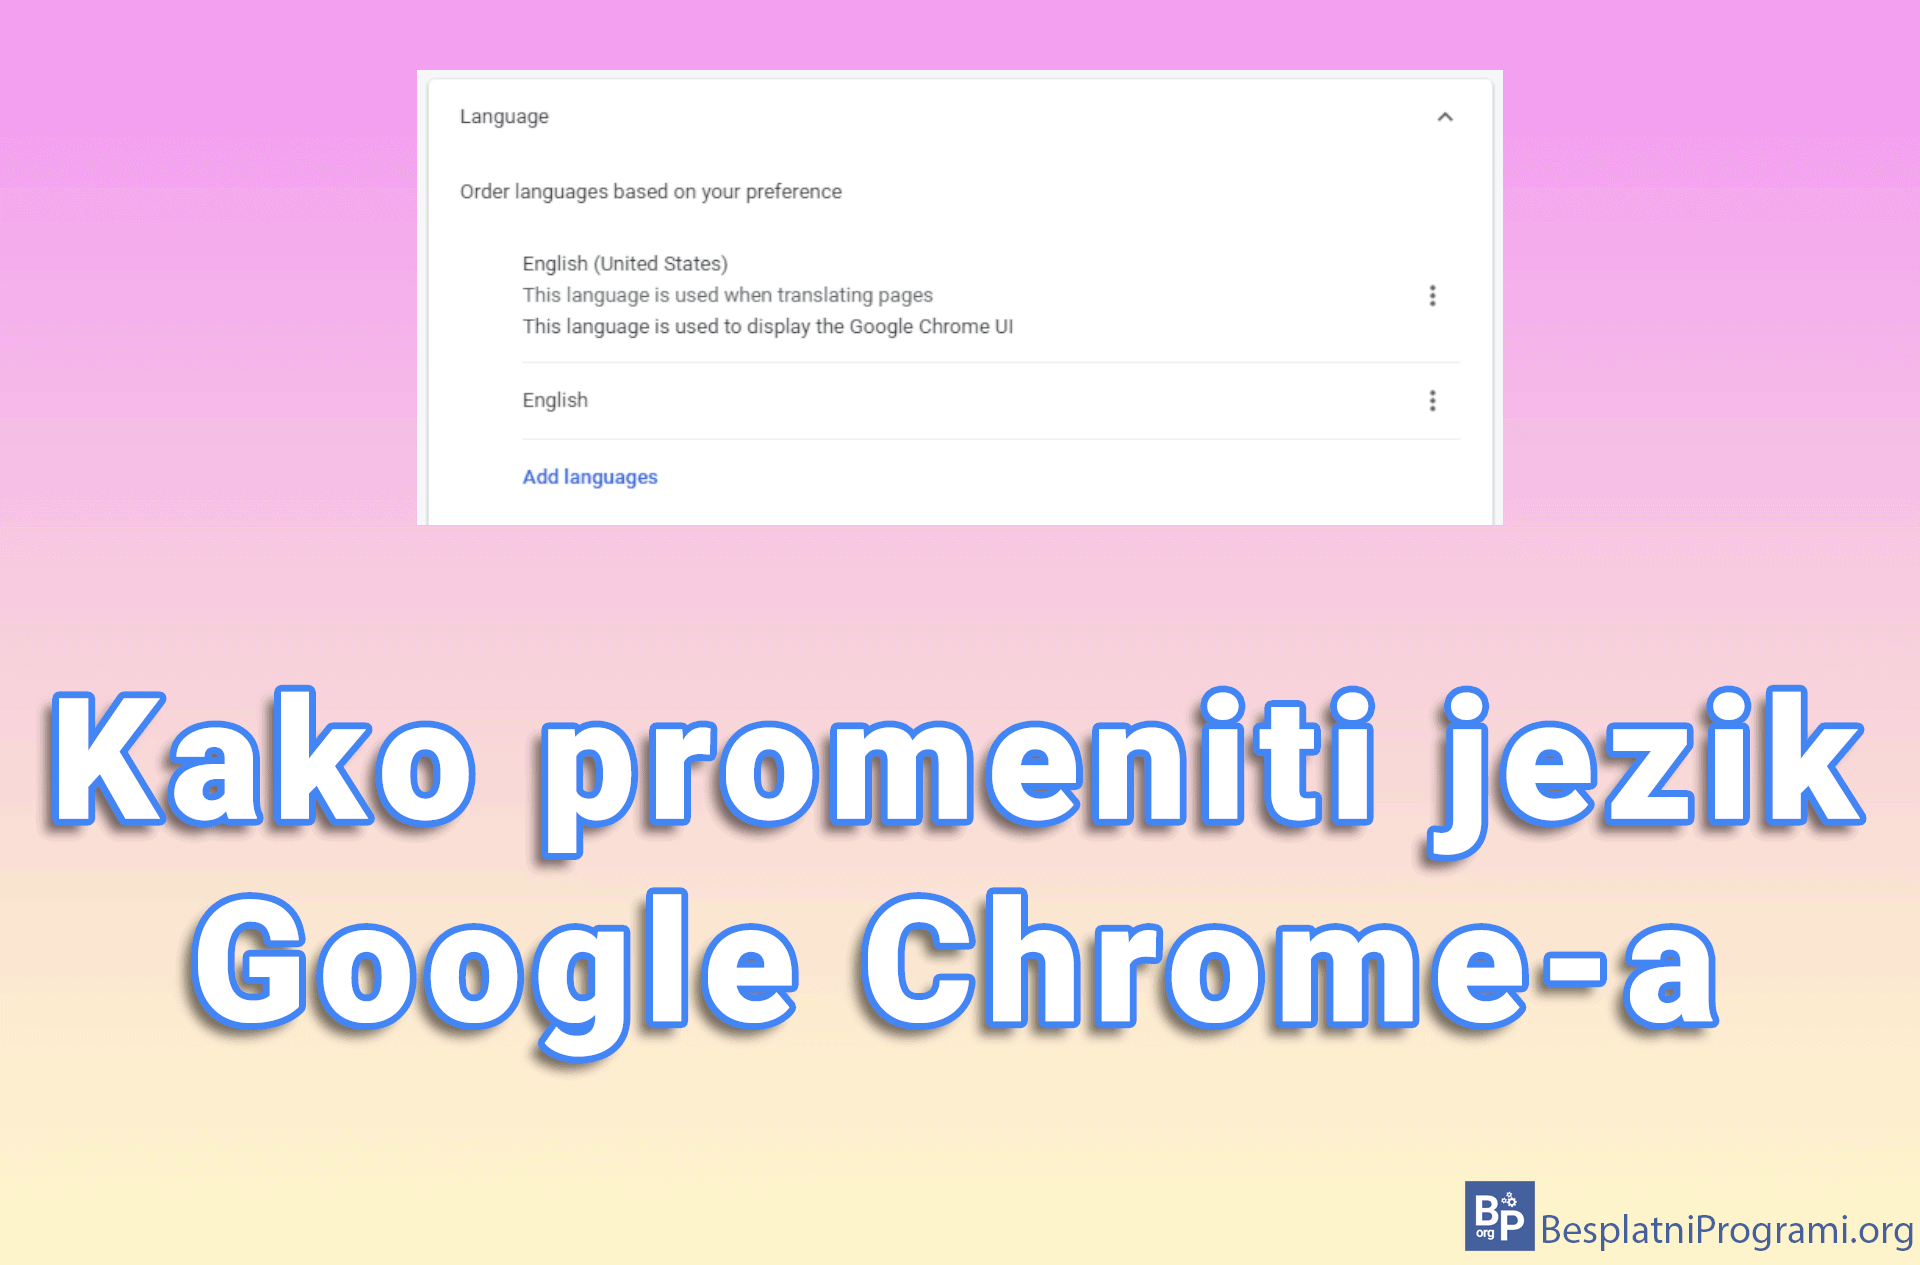 Kako promeniti jezik Google Chrome-a